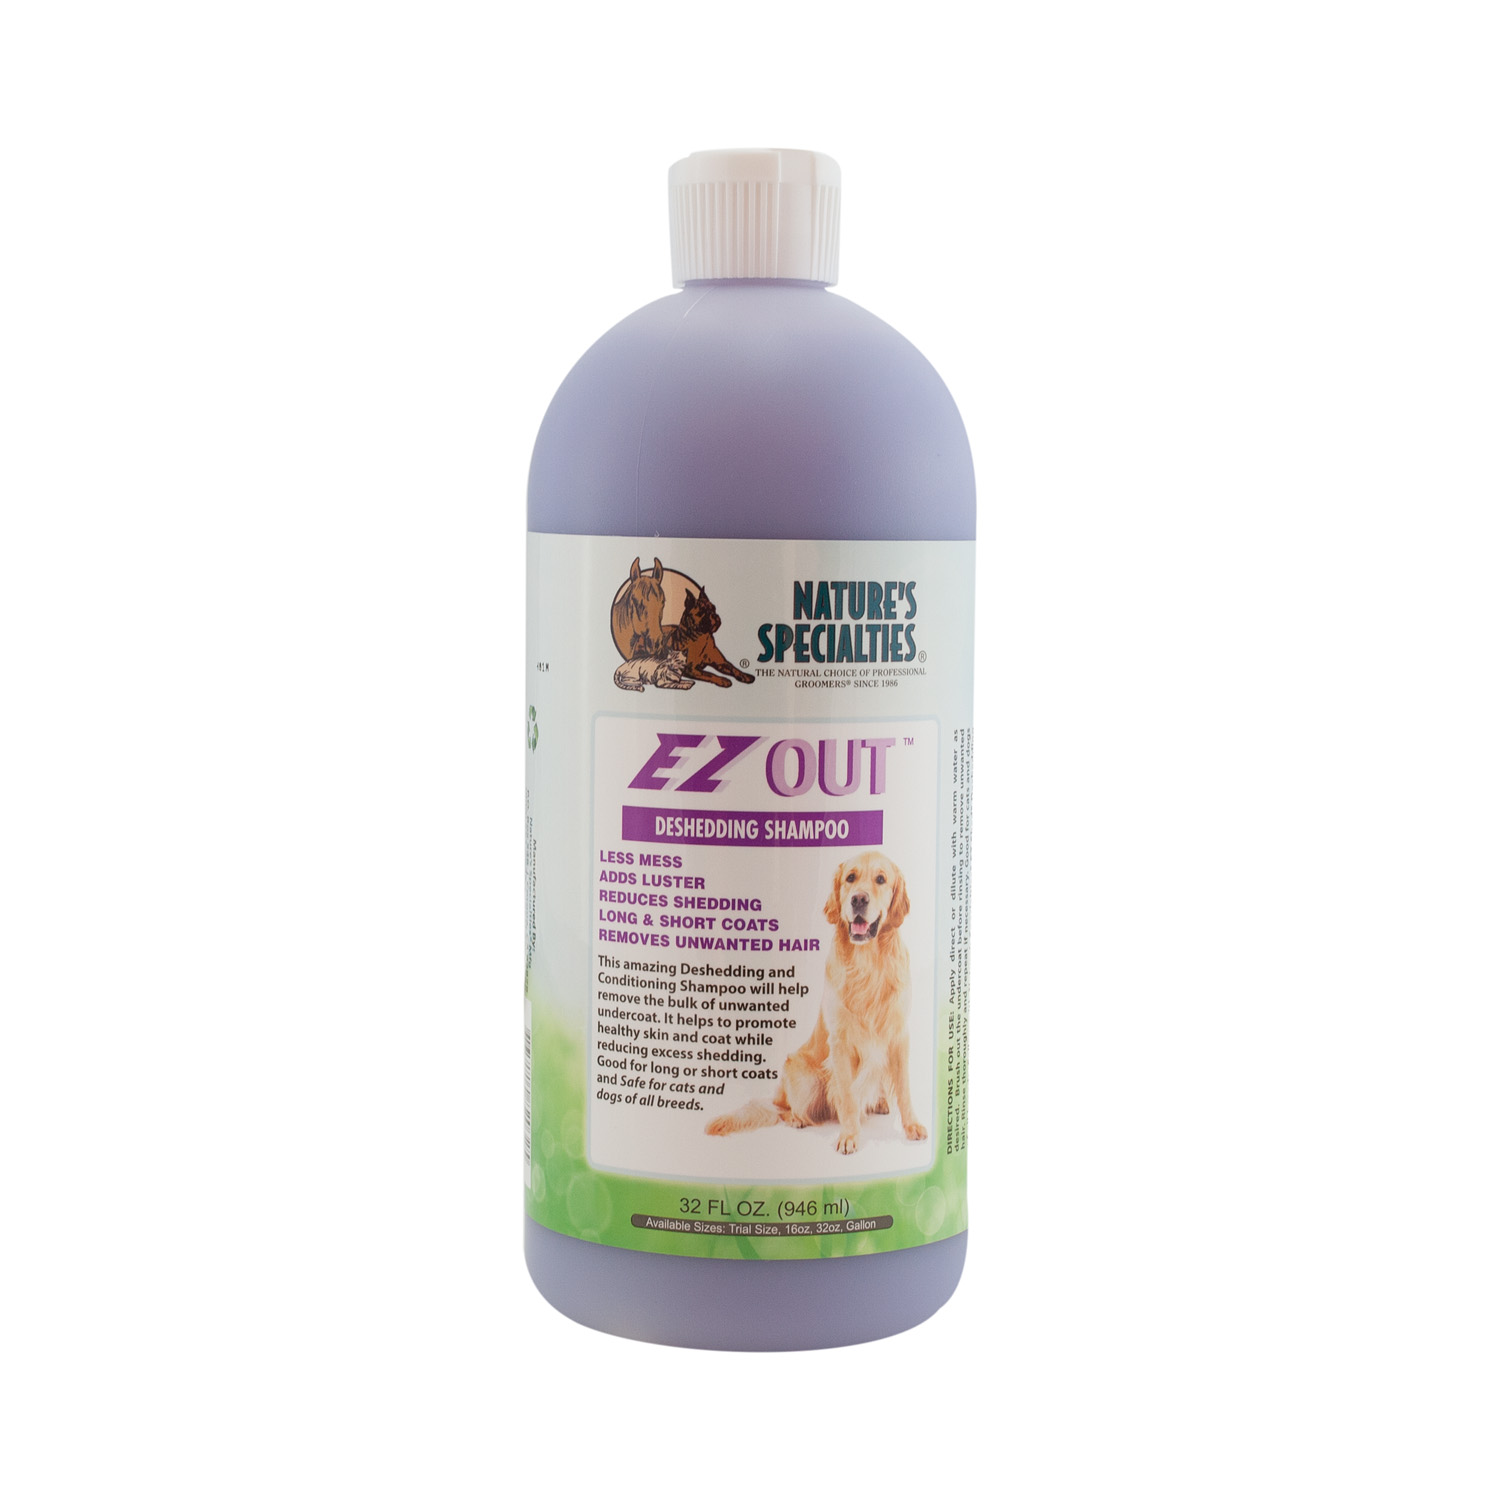 EZ OUT™ Entfilzungs und Unterwollentfernungs Shampoo für Hunde, Katzen, Welpen und Kleintiere